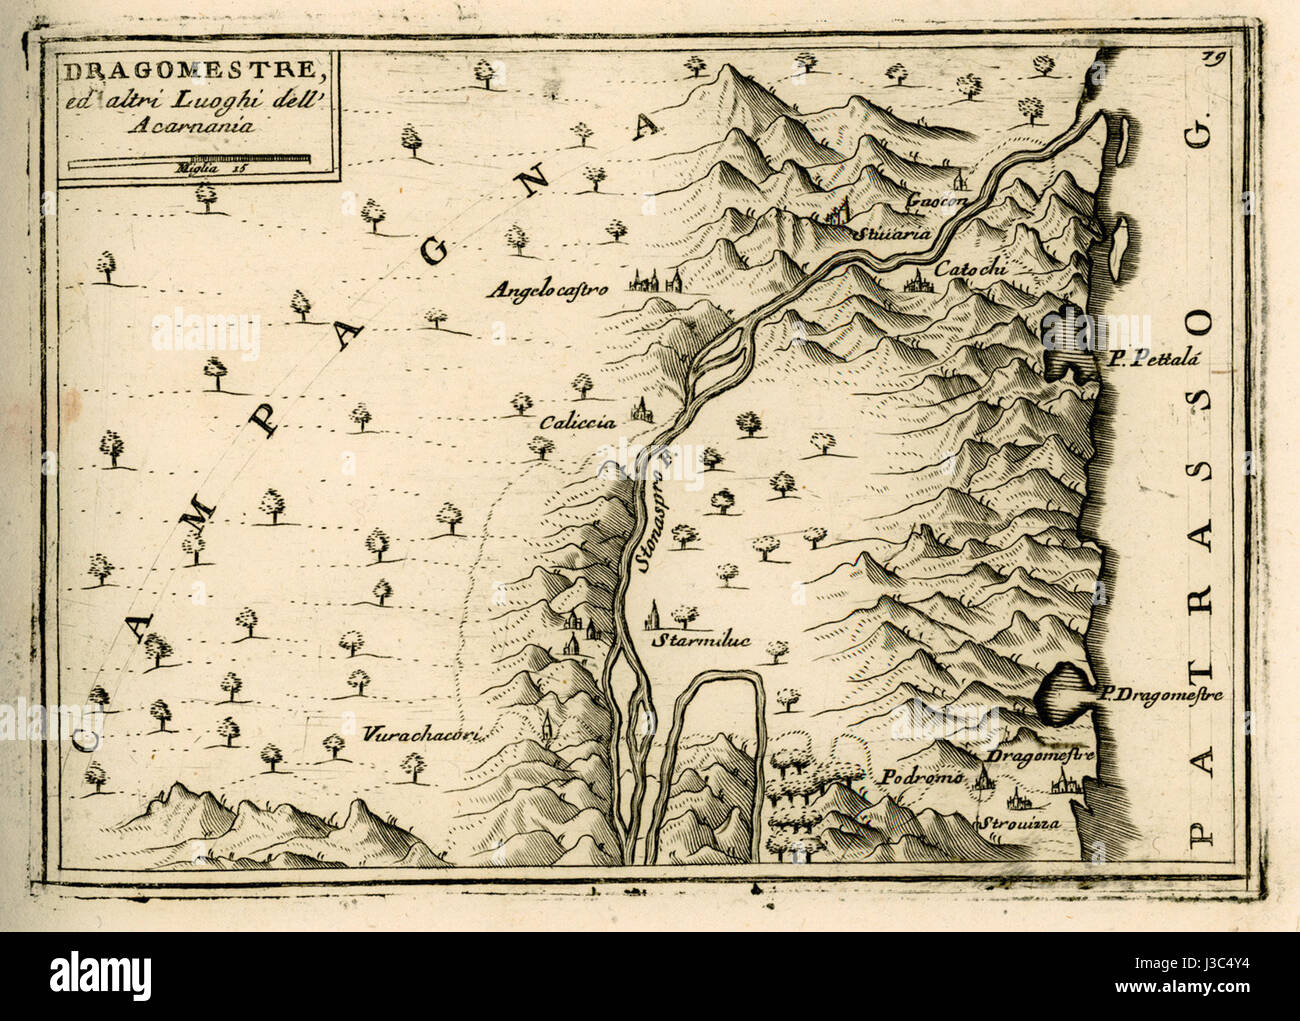 Dragomestre ed altri luoghi dell'Acarnania   Coronelli Vincenzo   1688 Stock Photo